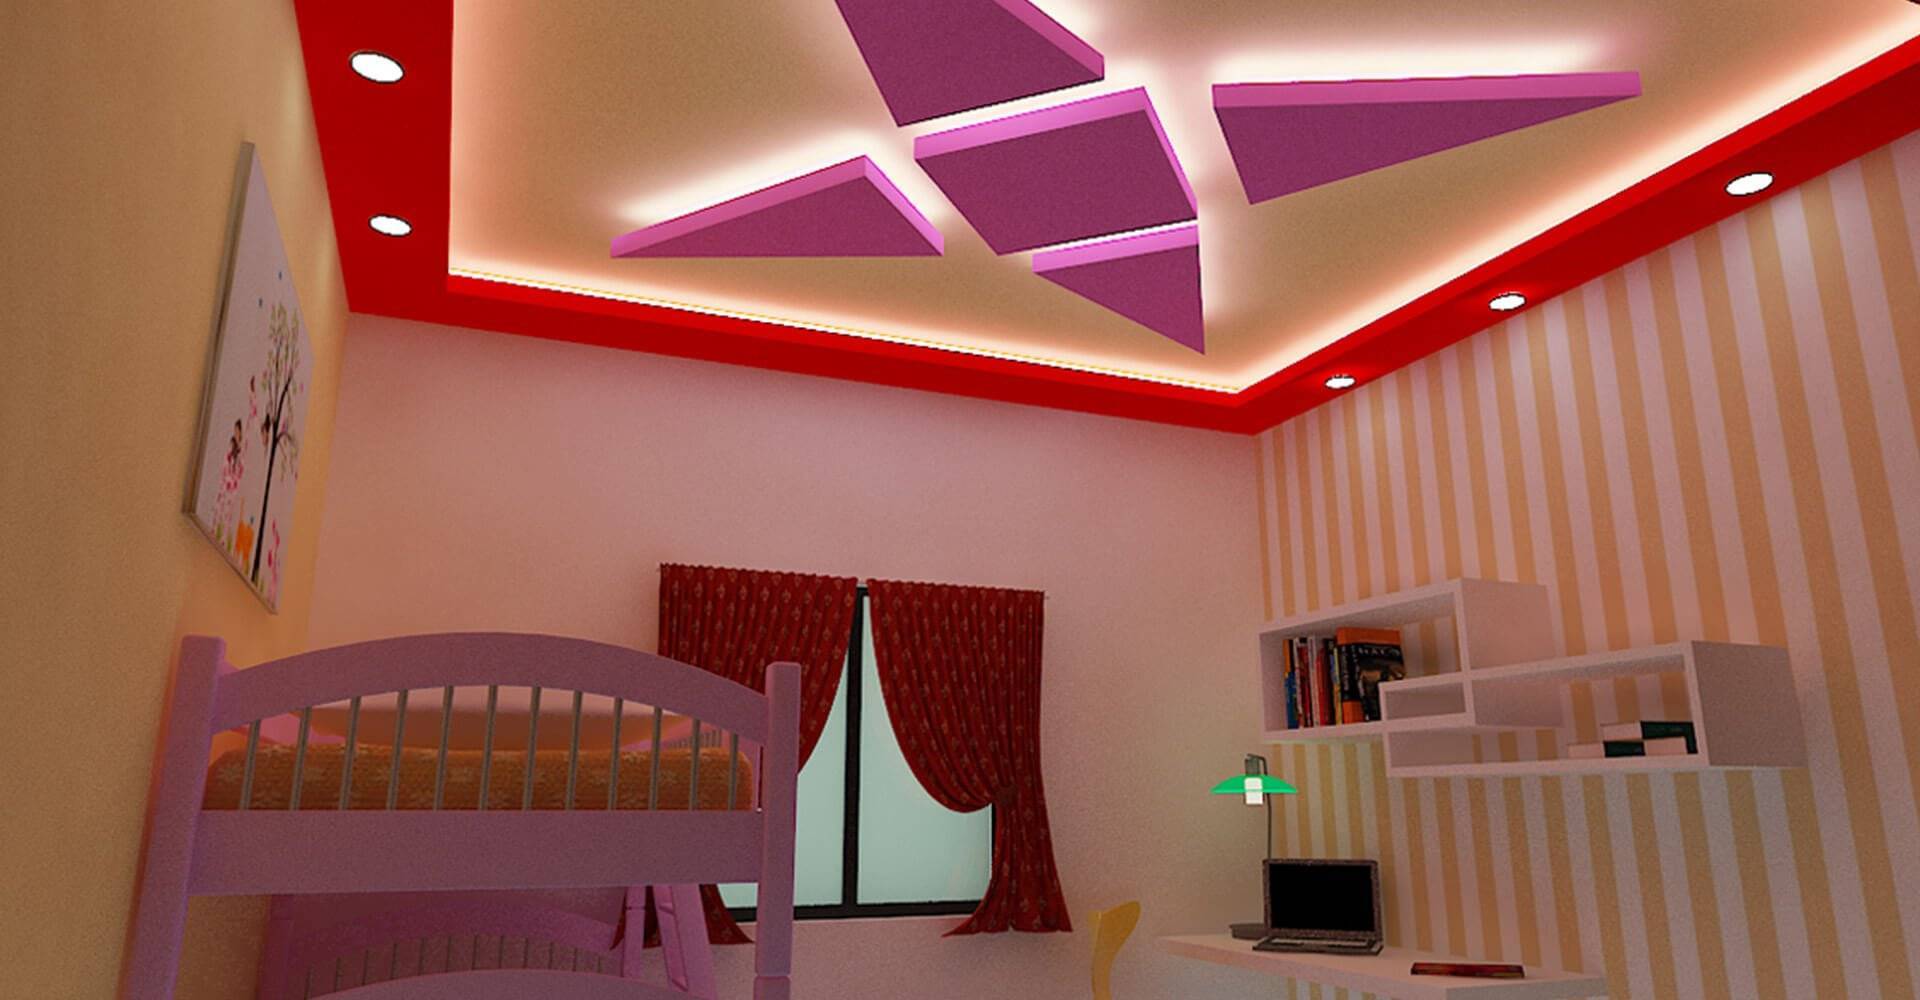 Потолок в детской комнате мальчика: принцип работы, материалы, цвет, инструкция по изготовлению, декор